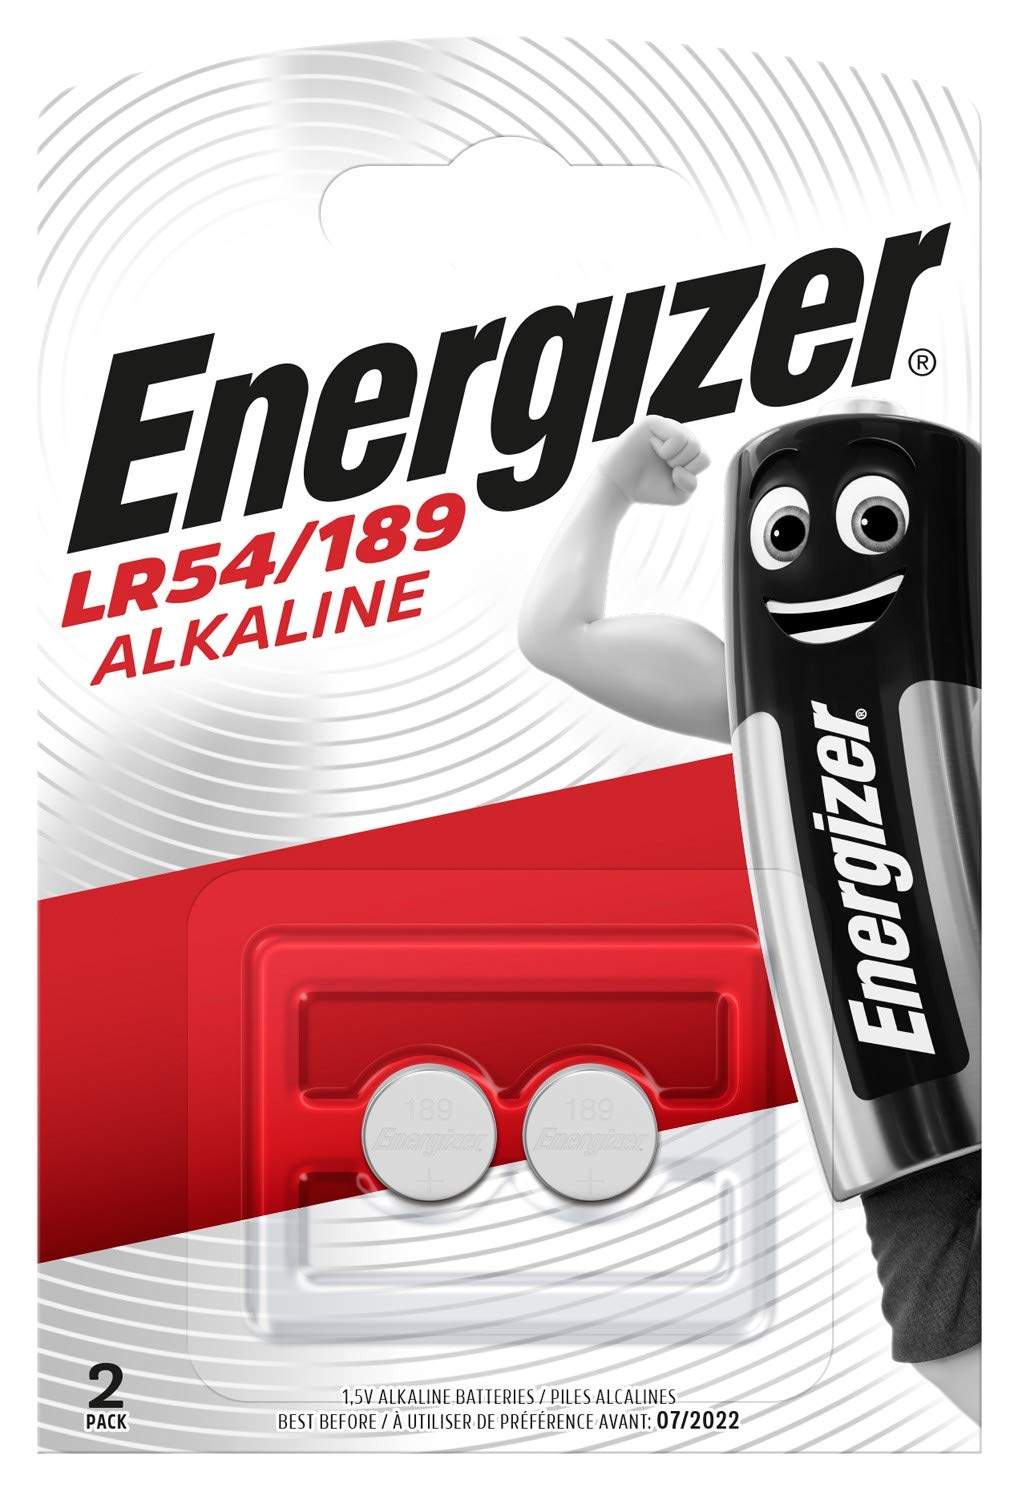 Energizer Speciale Alcaline 1,5V LR54/189 par 2